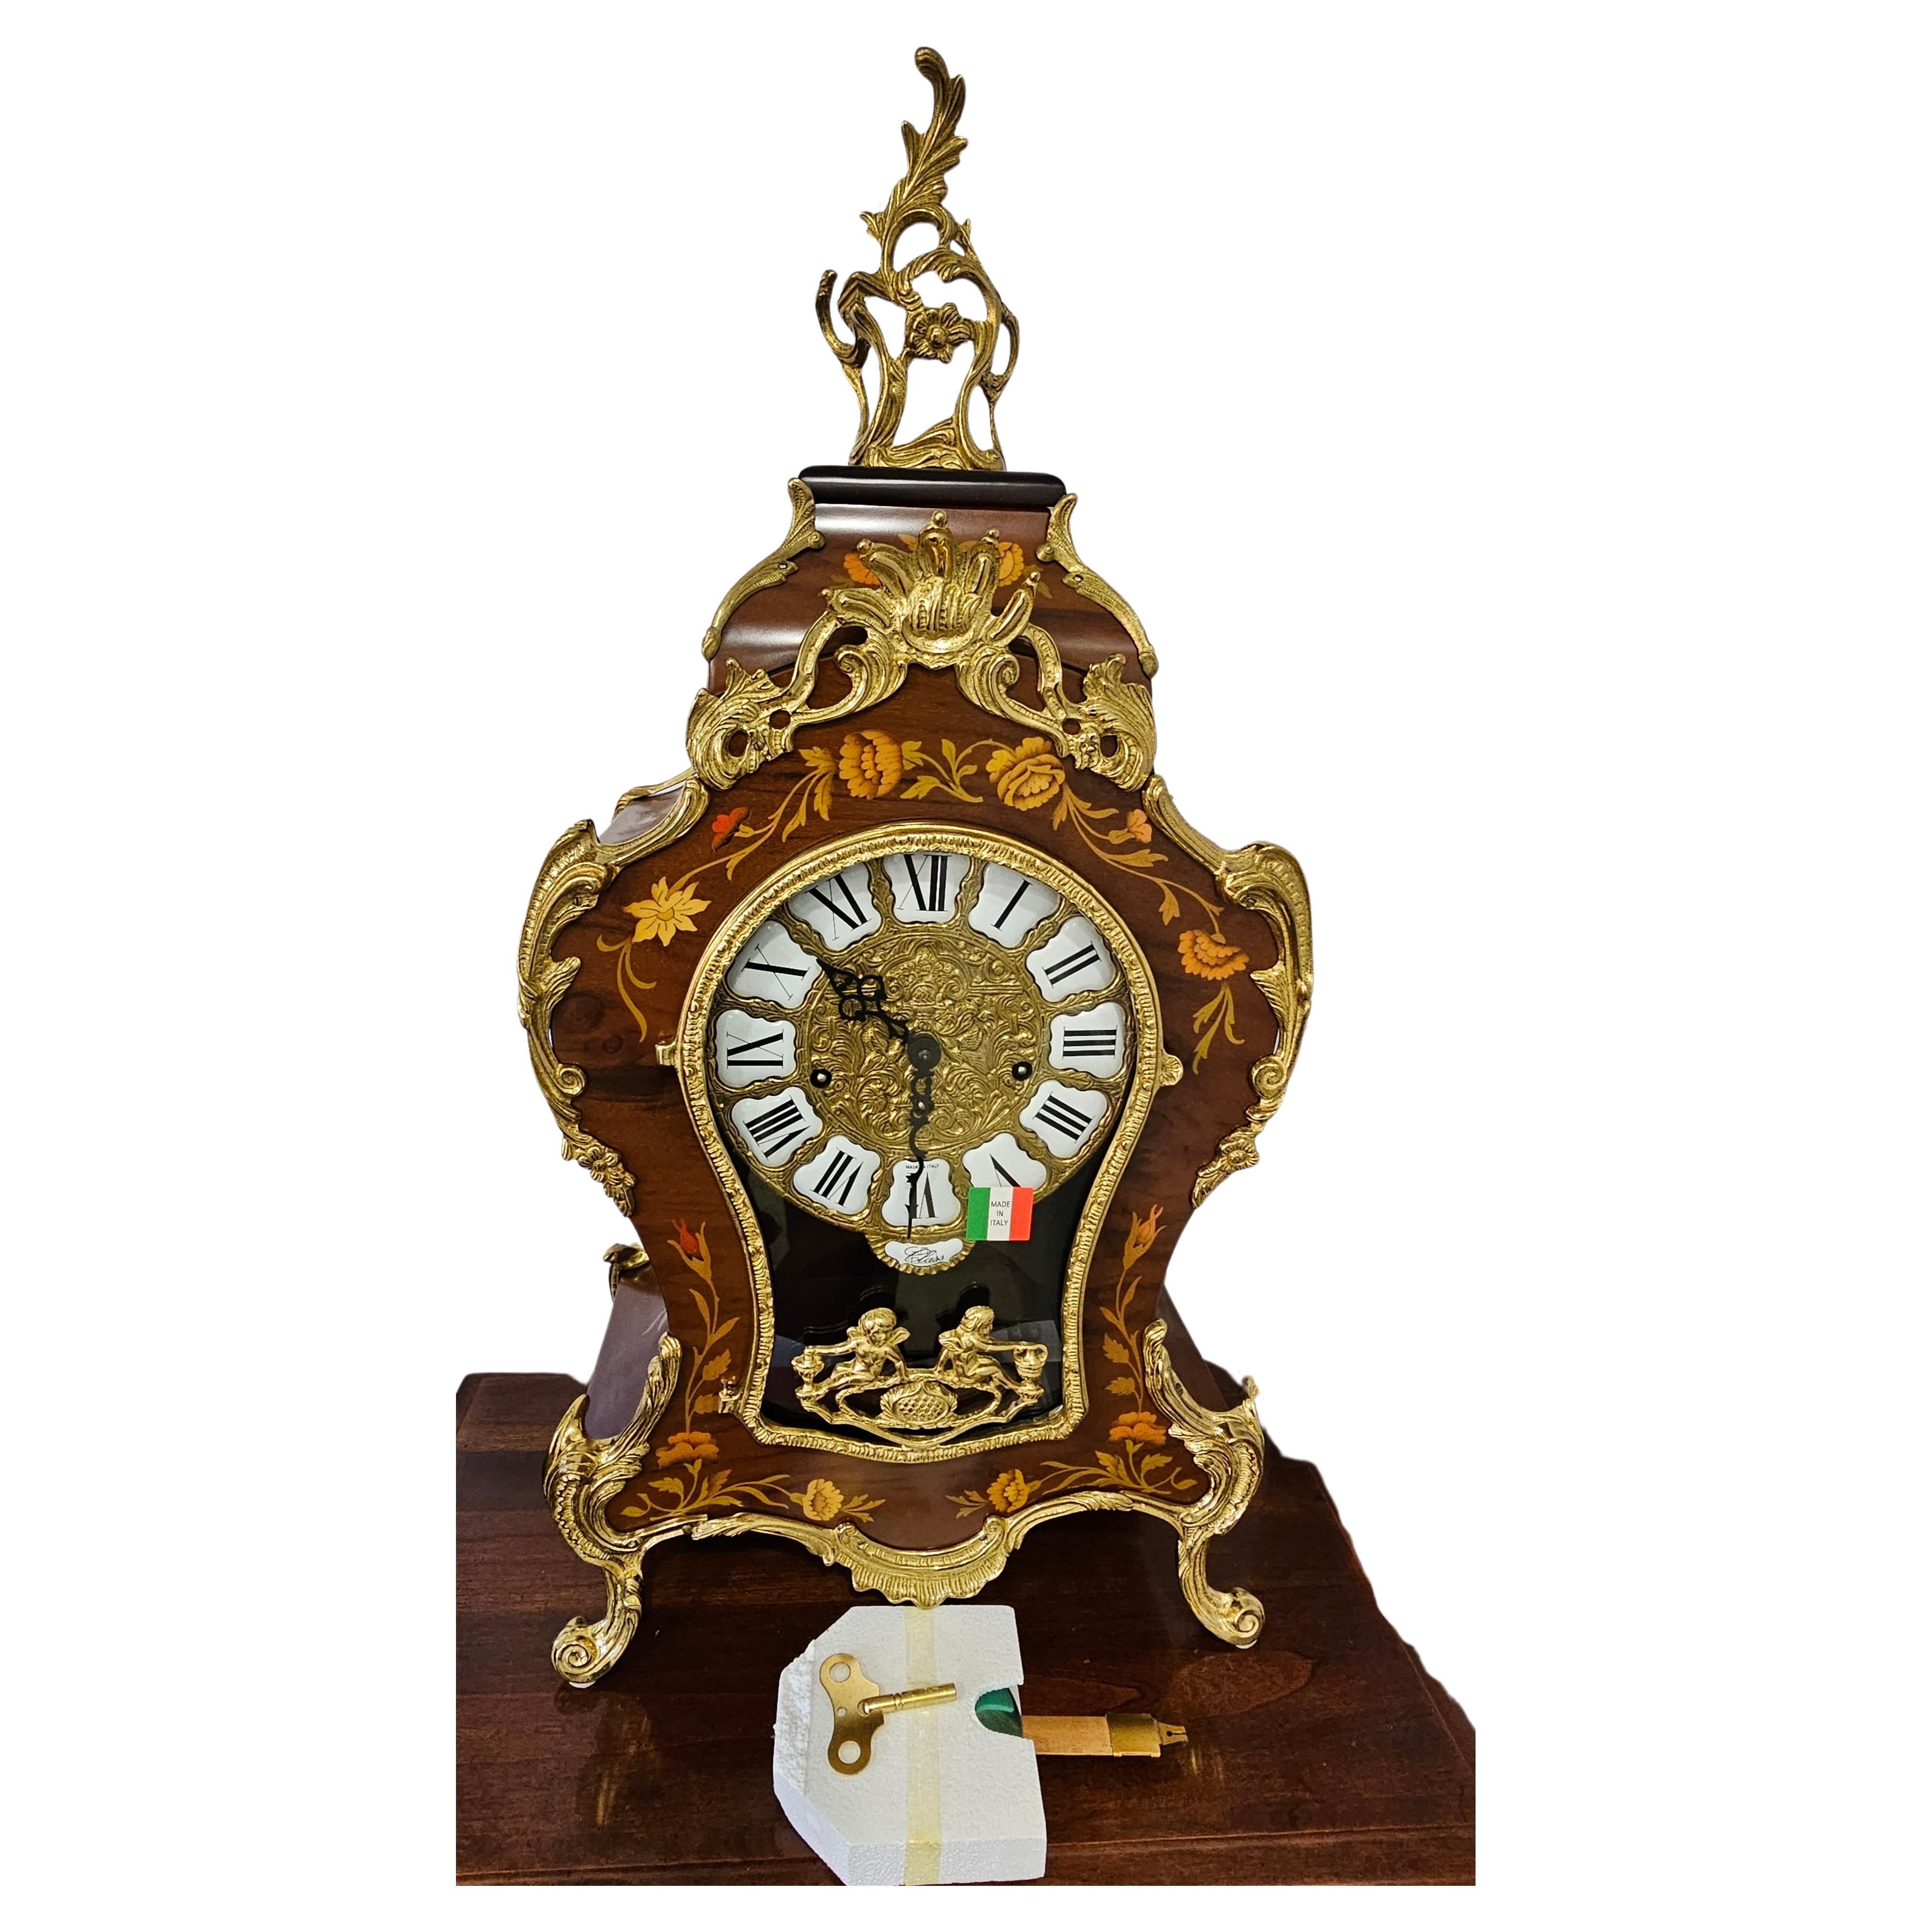 Horloge de cheminée allemande Franz Hermle du 21e siècle en marqueterie fine italienne DeART et boîtier en bronze doré, en état neuf, boîte ouverte.
Horloge fabriquée en Allemagne par l'historique et très célèbre horloger Franz Hermle dans le